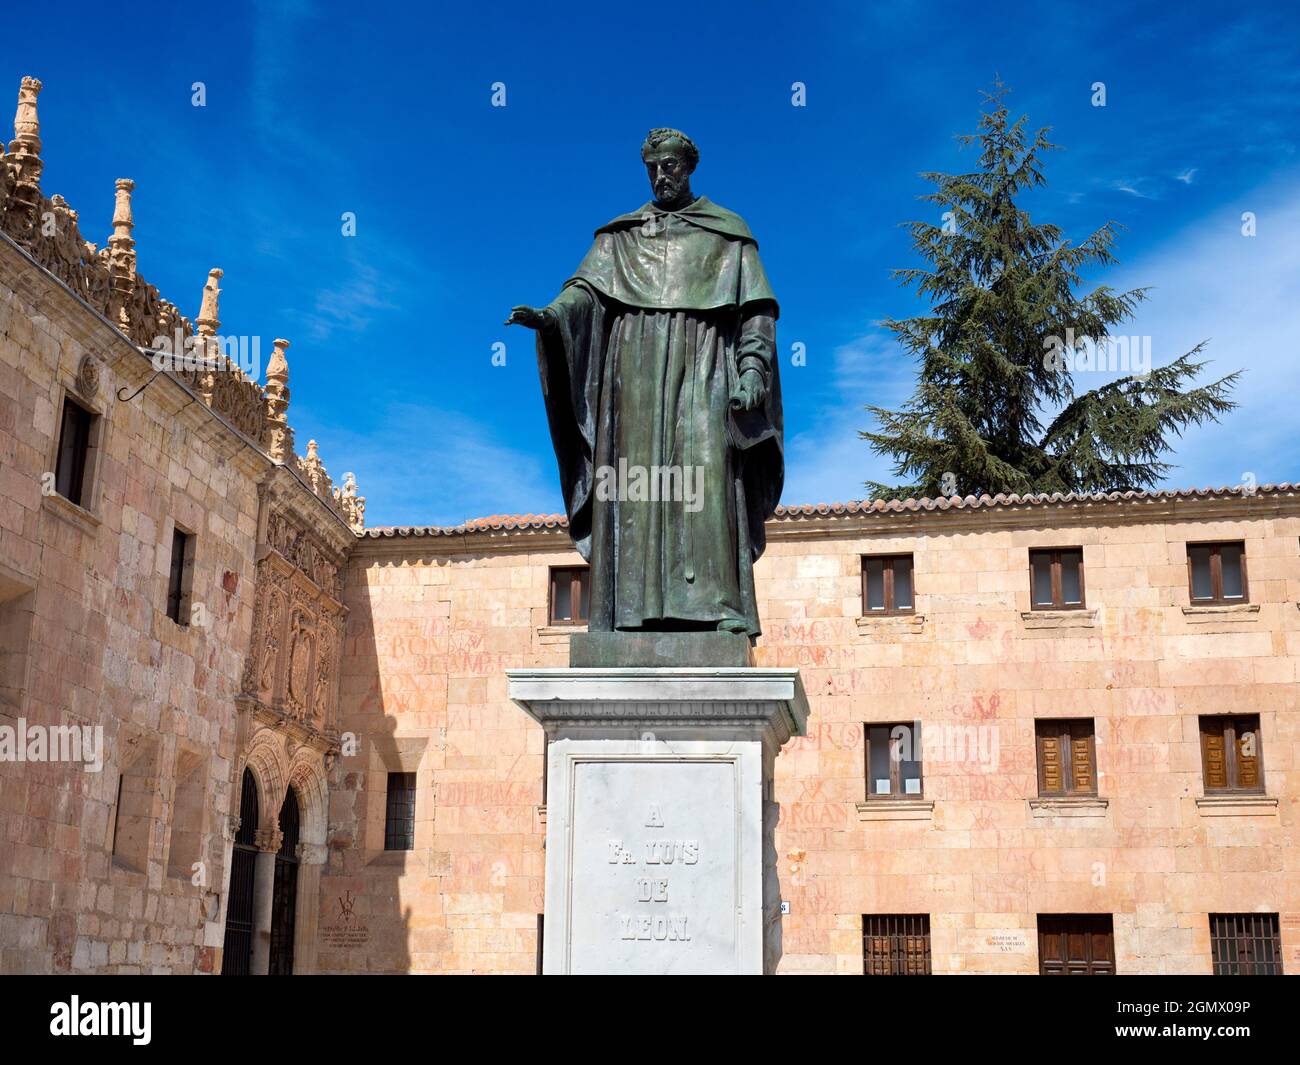 Salamanca, España - 13 de abril de 2017; no hay personas a la vista. Fray Luis de León fue un famoso poeta lírico español, fraile agustino, teólogo y académico, wh Foto de stock